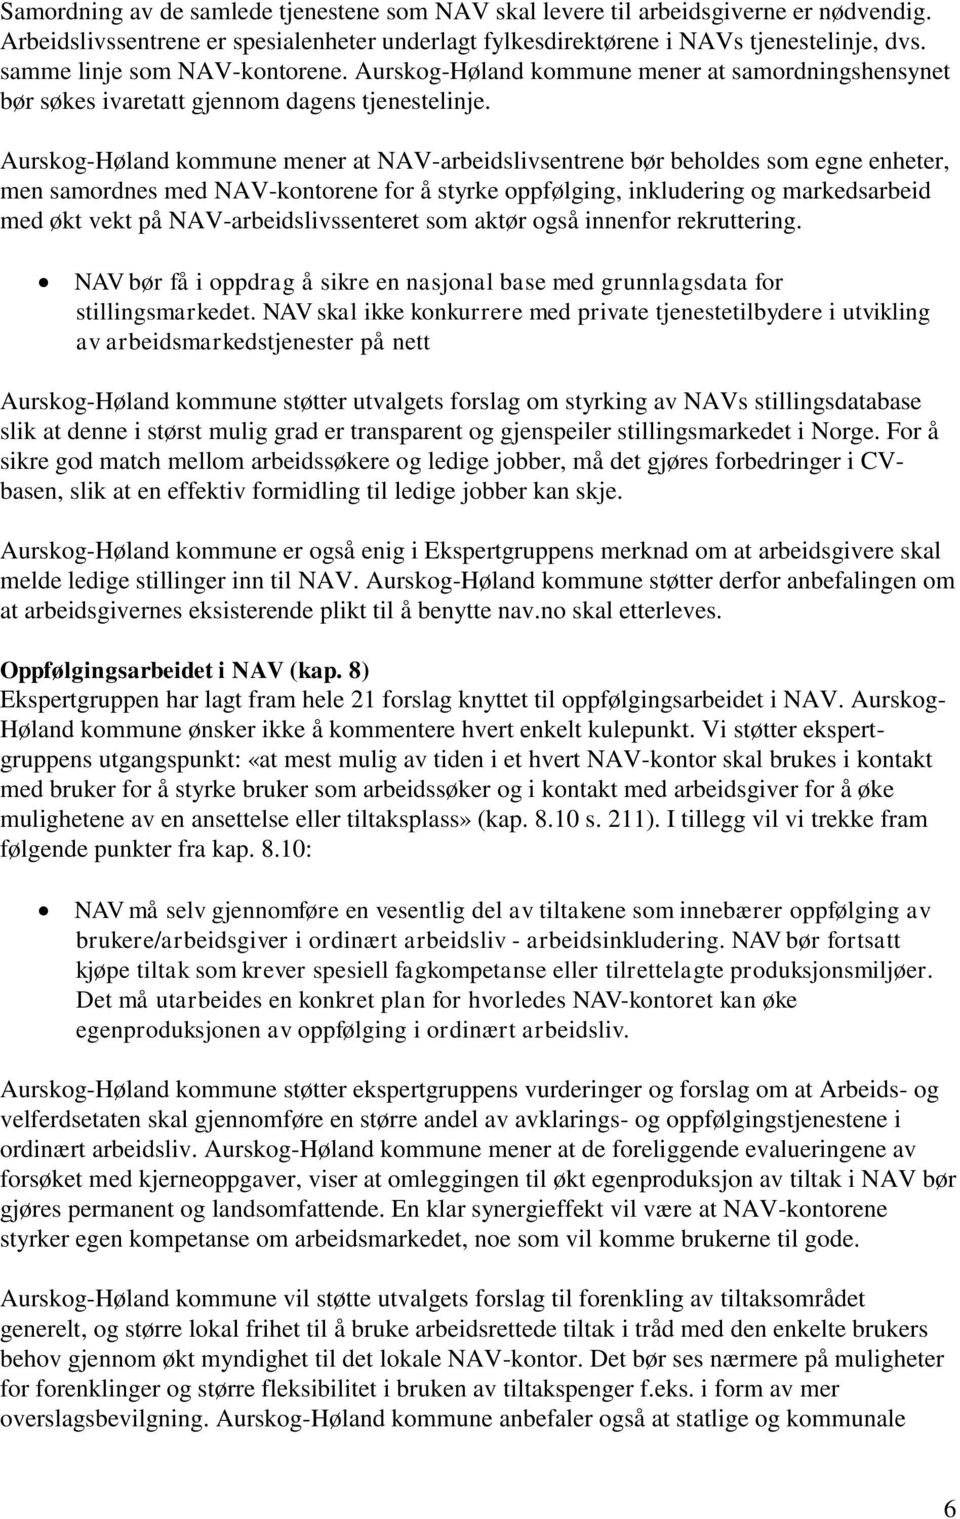 Aurskog-Høland kommune mener at NAV-arbeidslivsentrene bør beholdes som egne enheter, men samordnes med NAV-kontorene for å styrke oppfølging, inkludering og markedsarbeid med økt vekt på